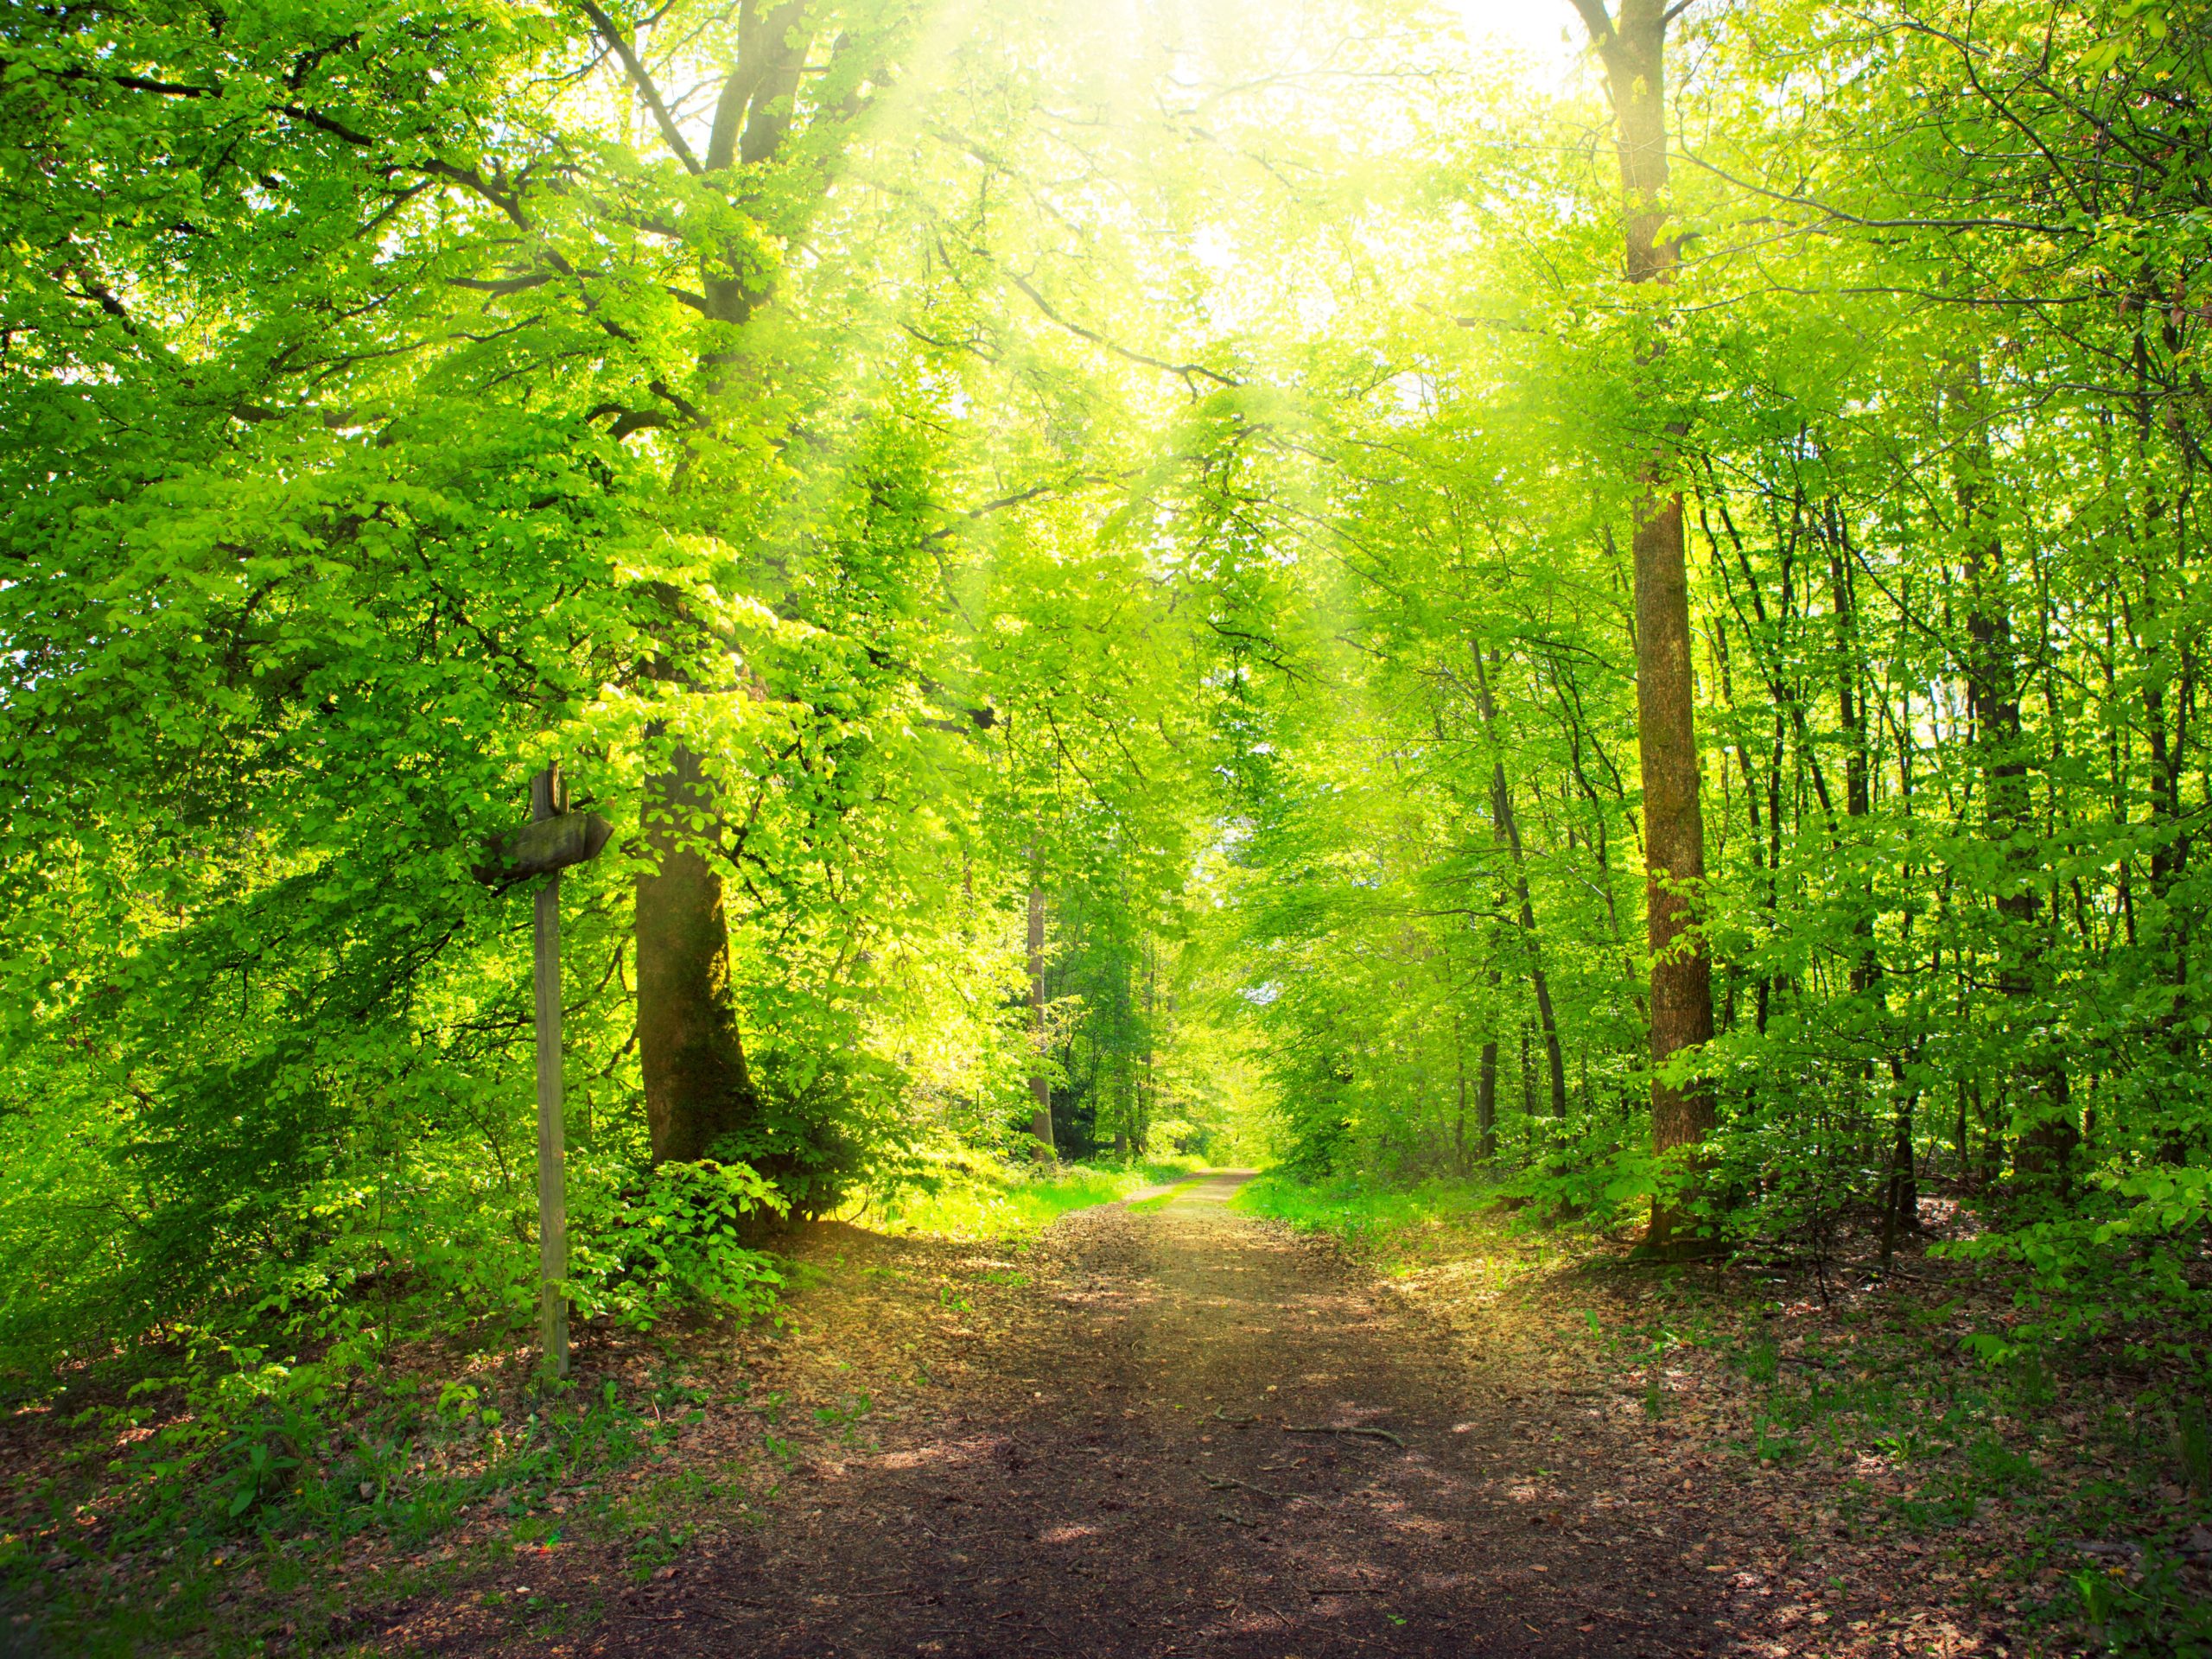 Geplagt von Stress? Ein Spaziergang in der Natur, besonders im Wald, führt zur Entspannung und gibt Energie